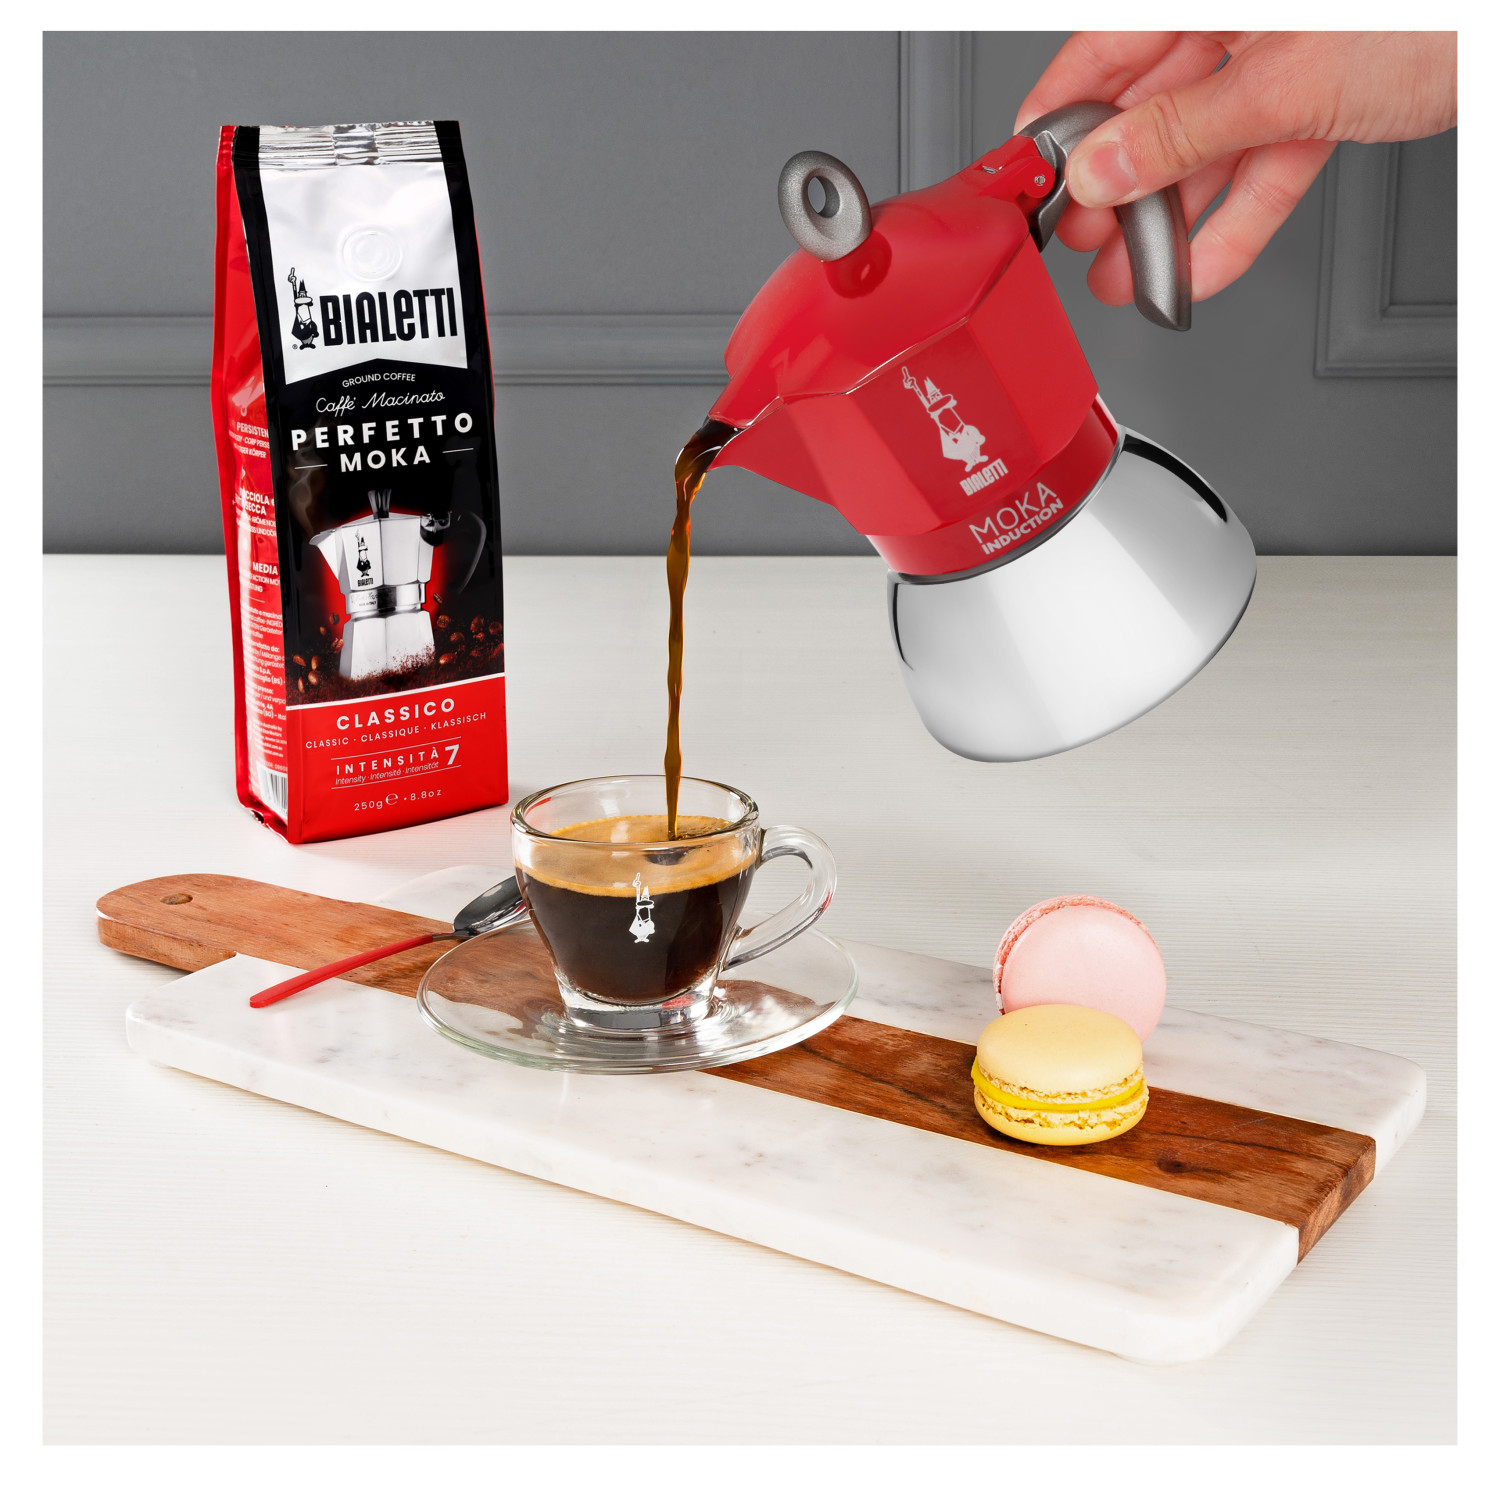 Induction 6 BIALETTI Espressokocher RED für Moka New Tassen Rot/Silber